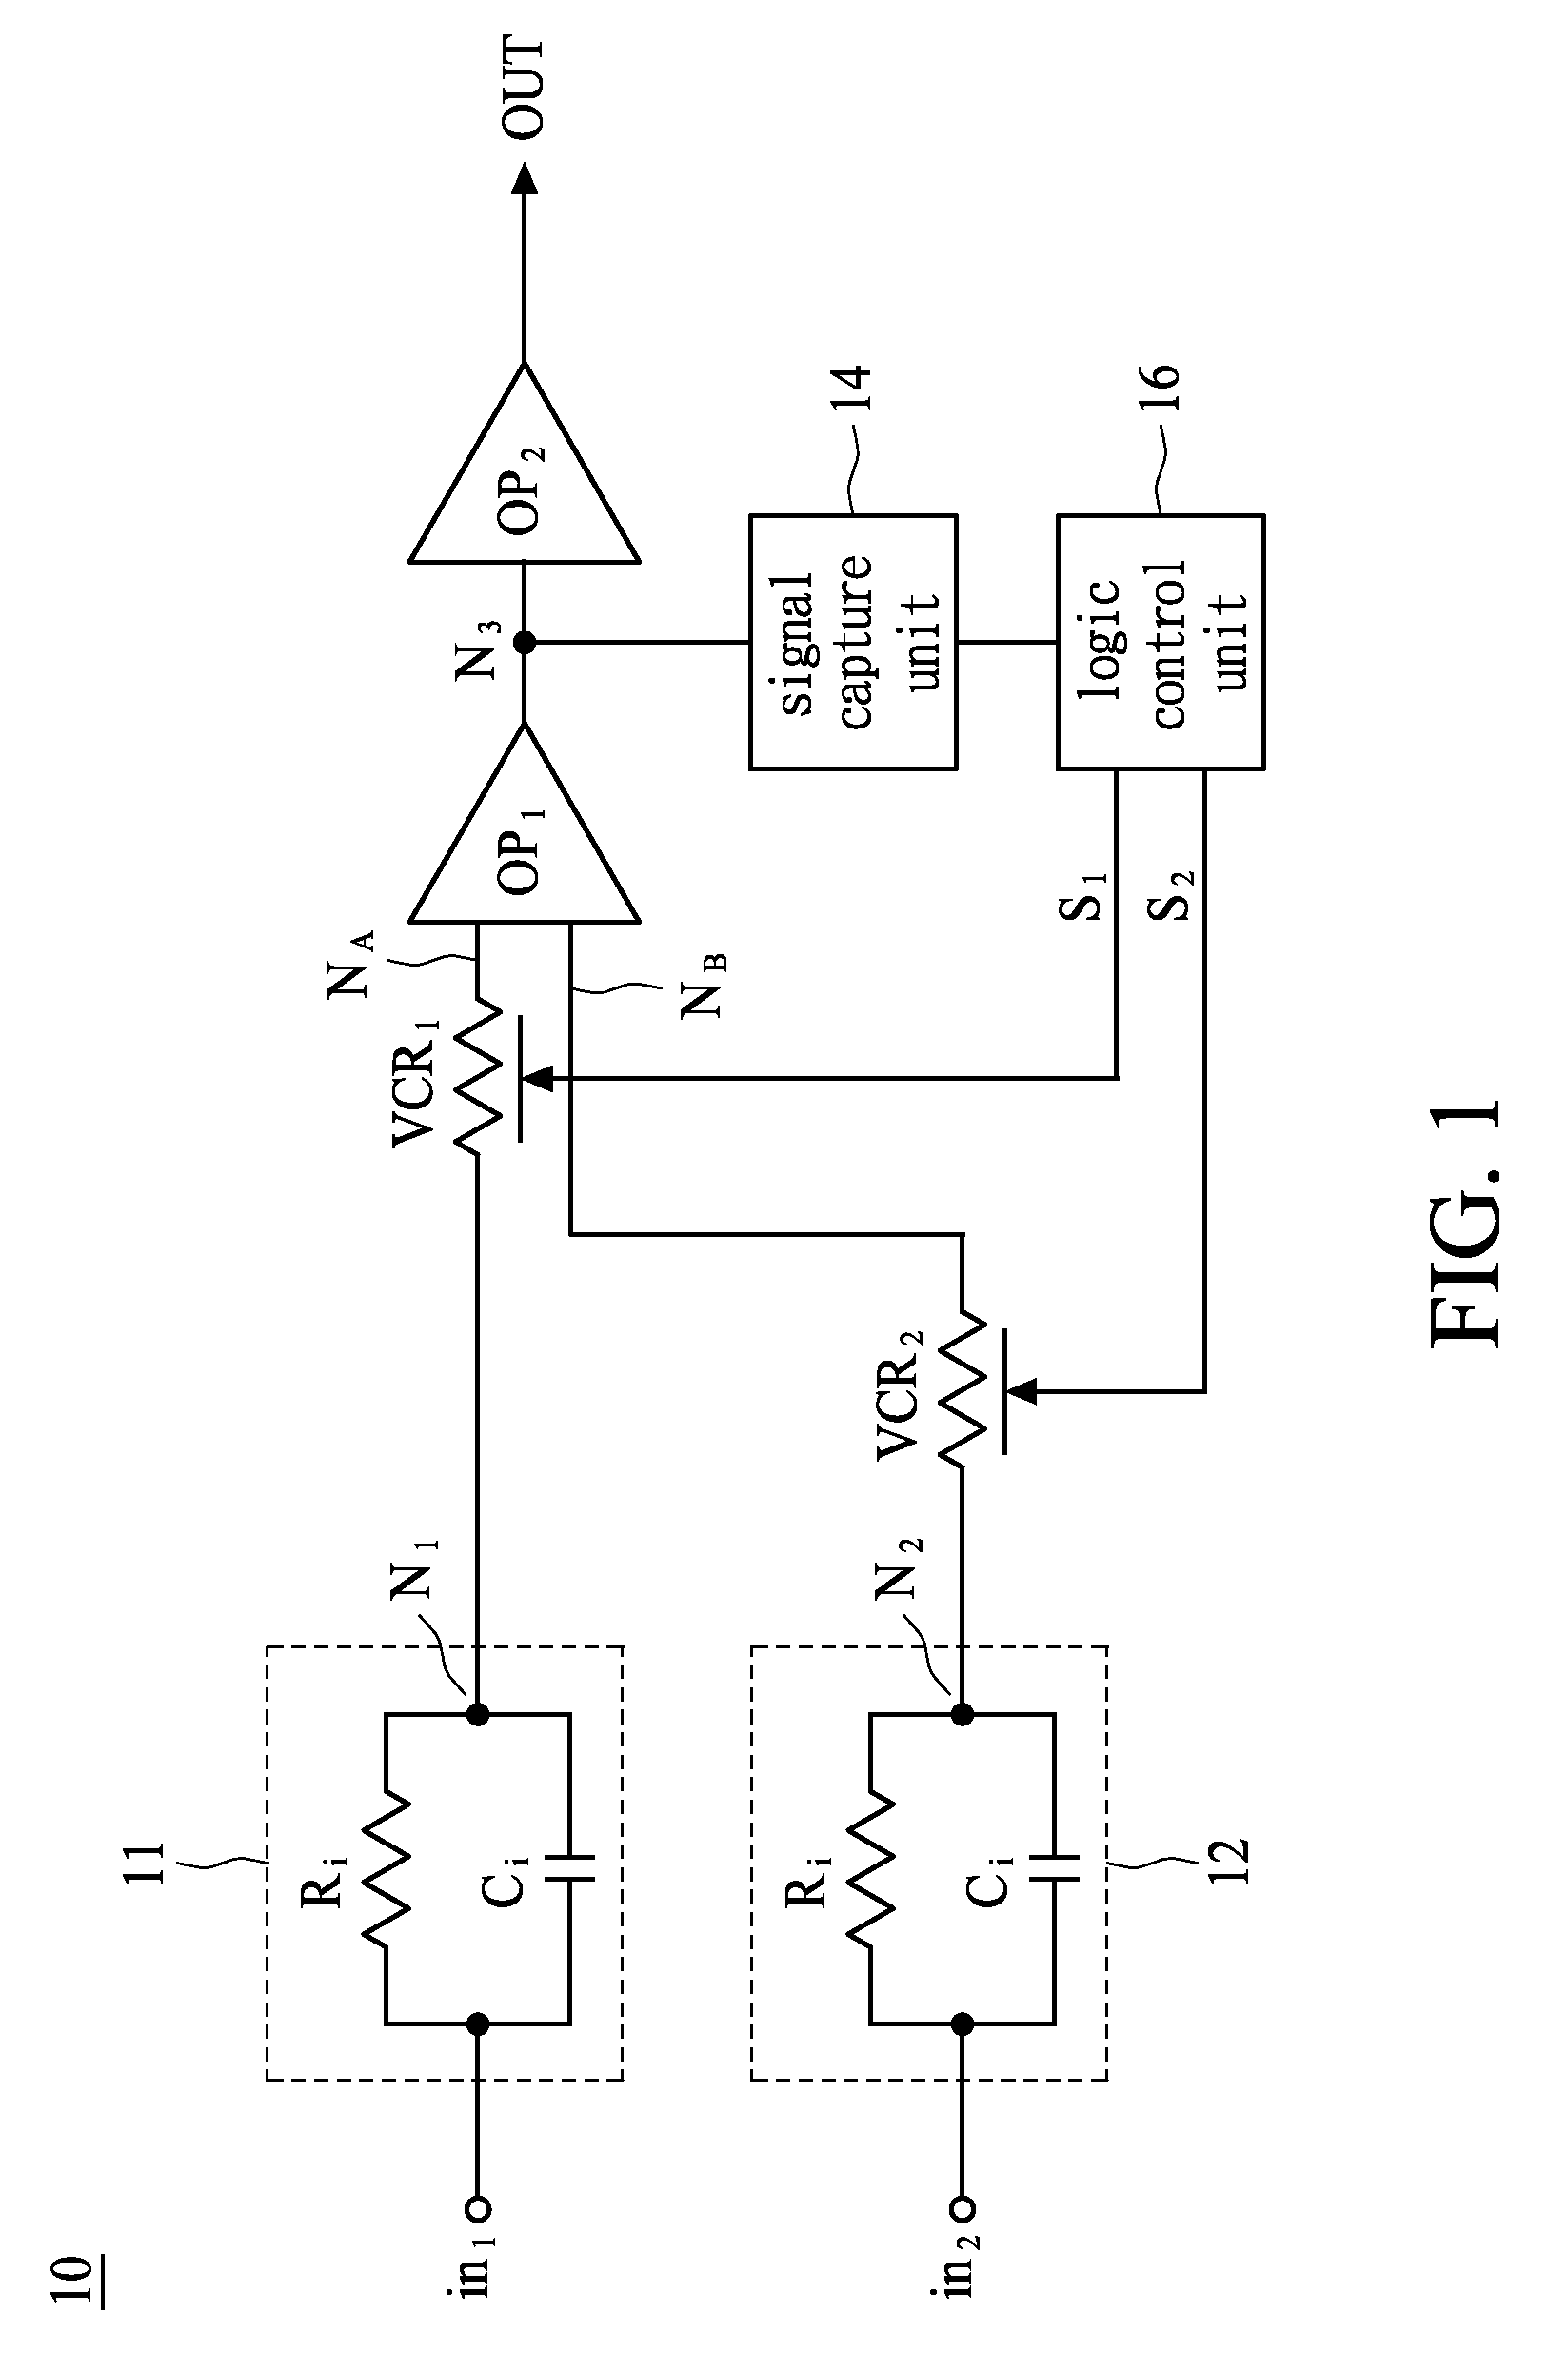 Differential voltage sensing method